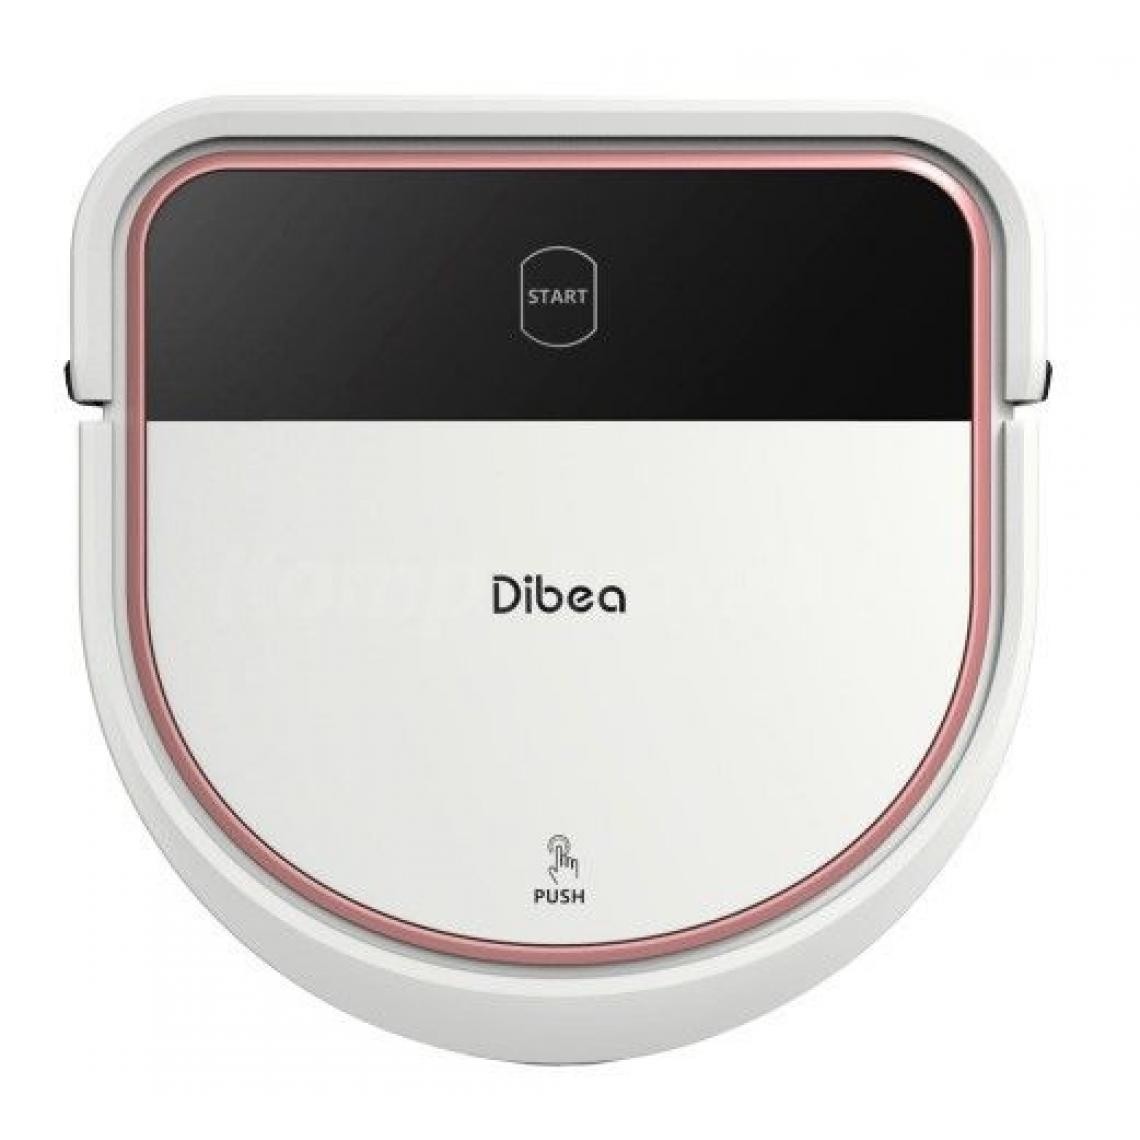 Inconnu - Robot nettoyeur Dibea D500 PRO avec fonction mop - Aspirateur robot